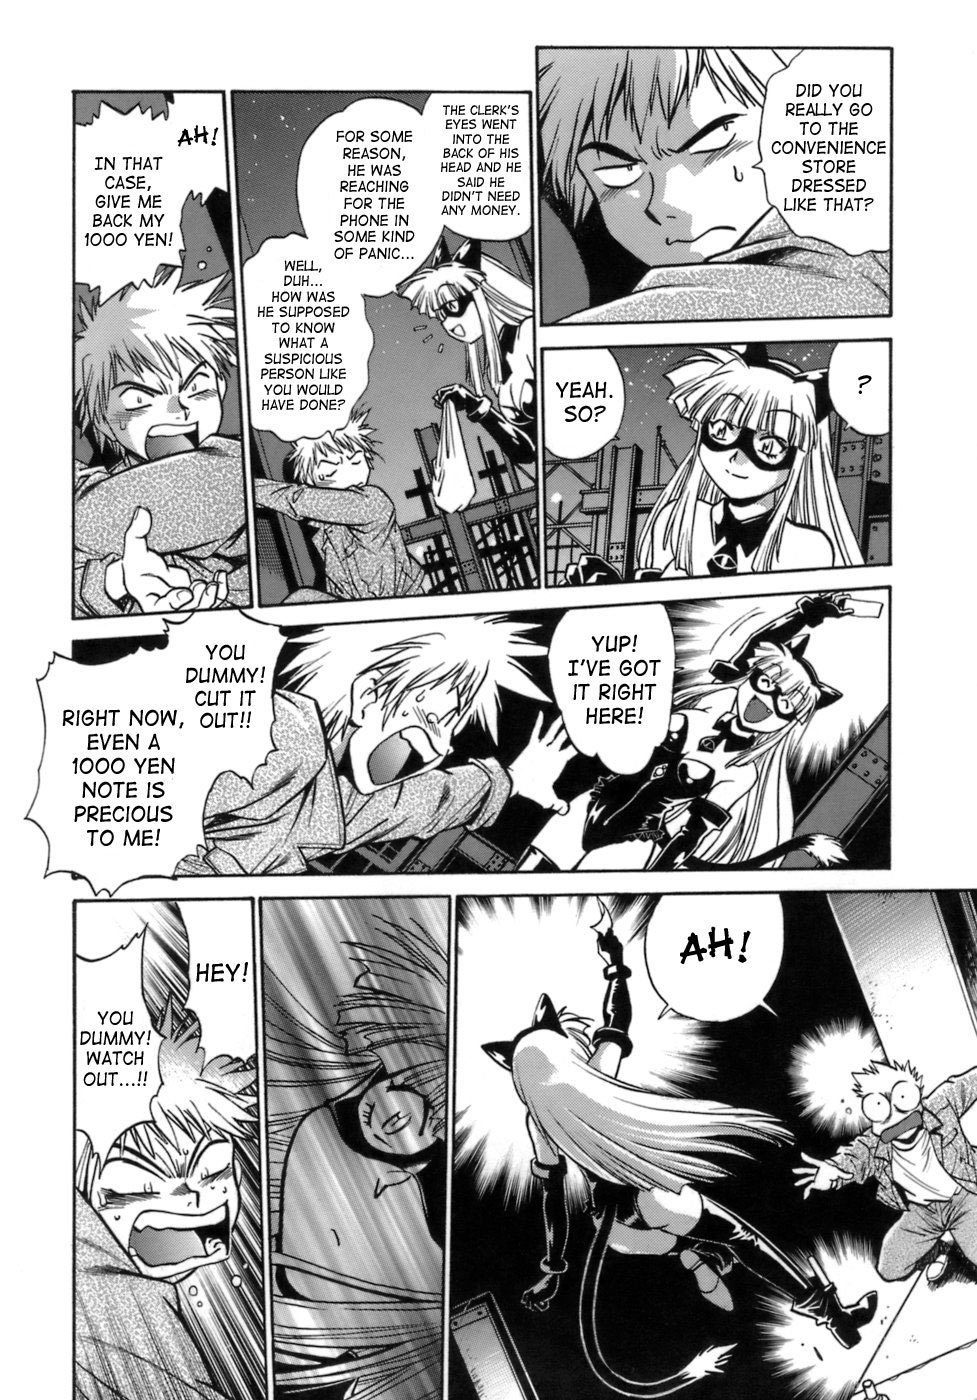 Tail Chaser Vol.1 32 hentai manga